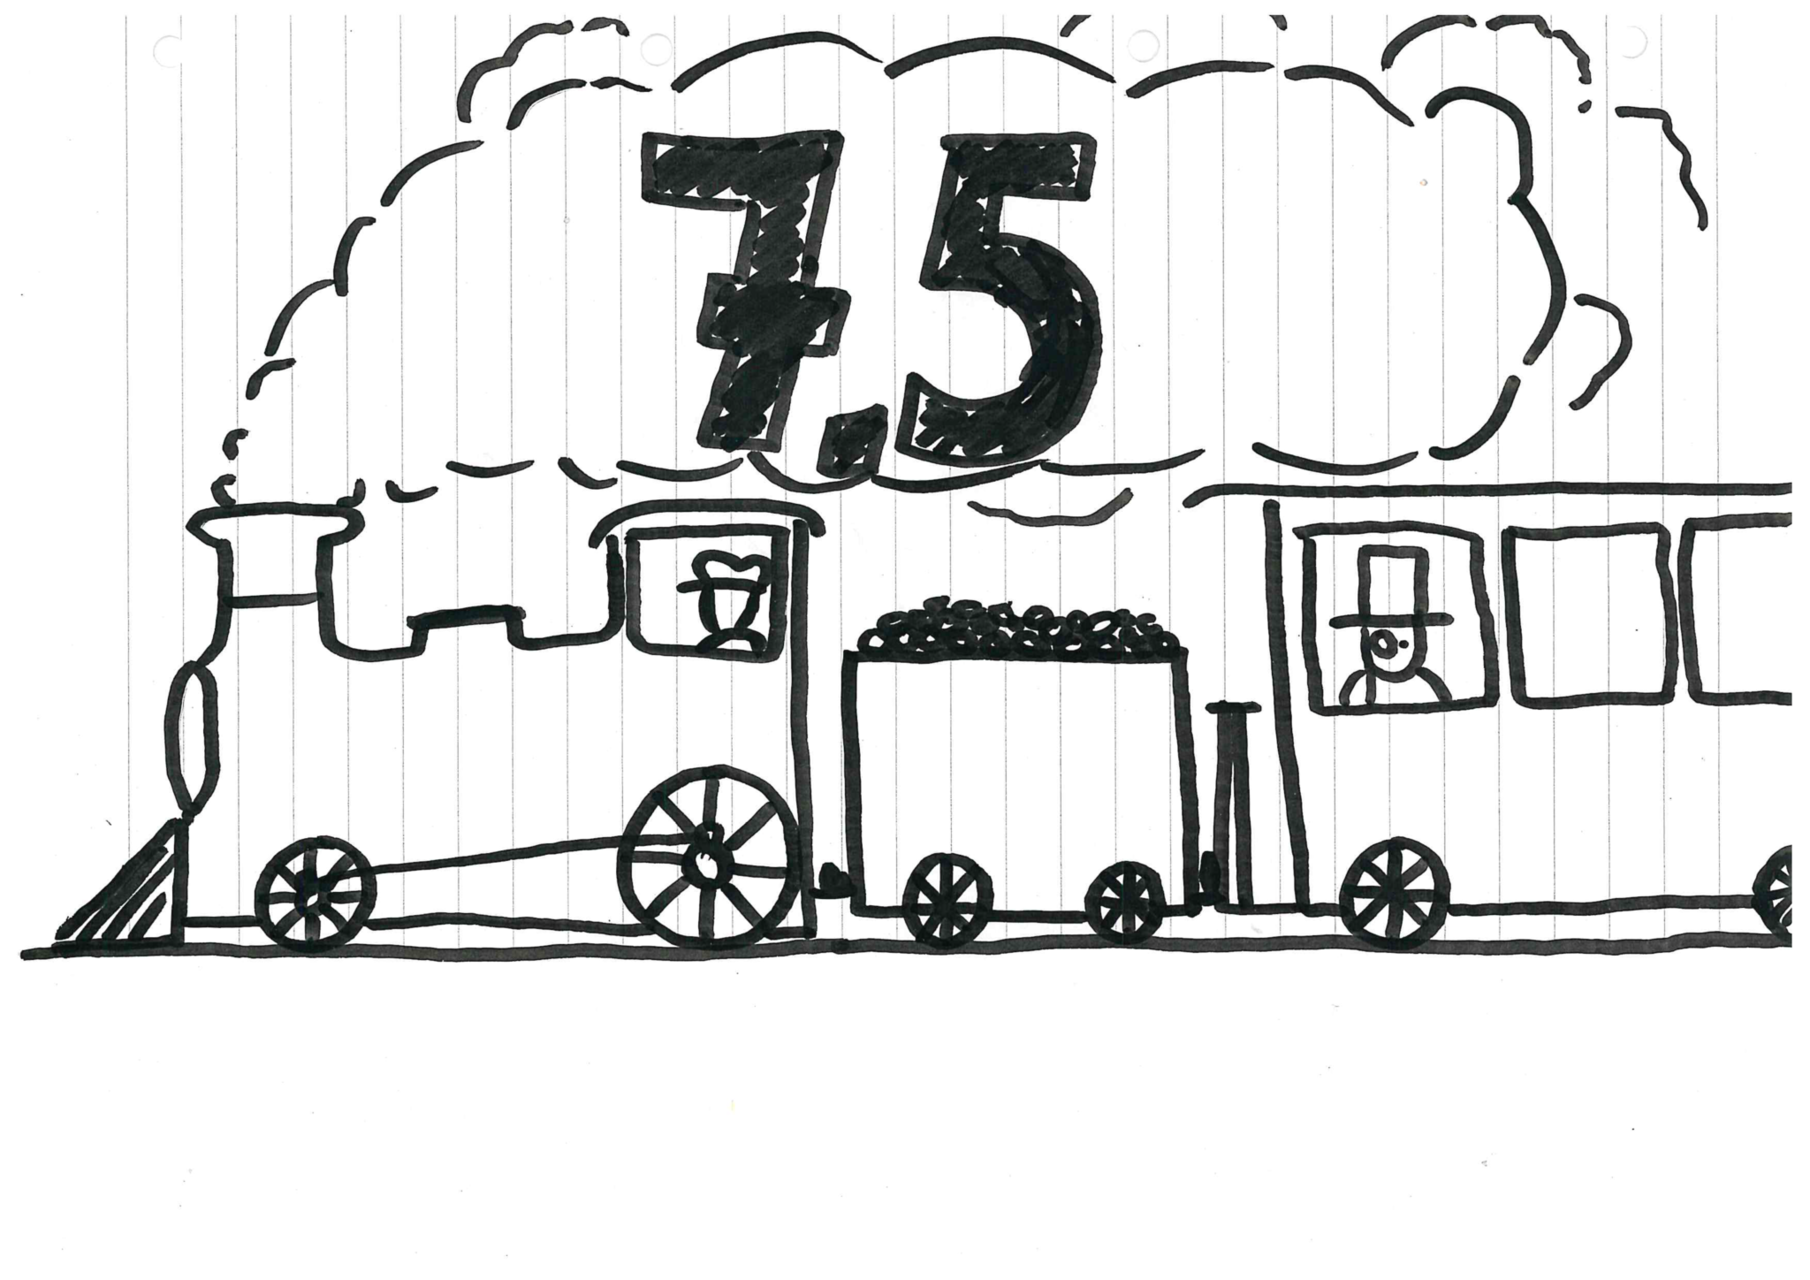 Ein Zug mit Dampflokomotive, in dessen Dampf die Wertung steht. Wertung 7,5